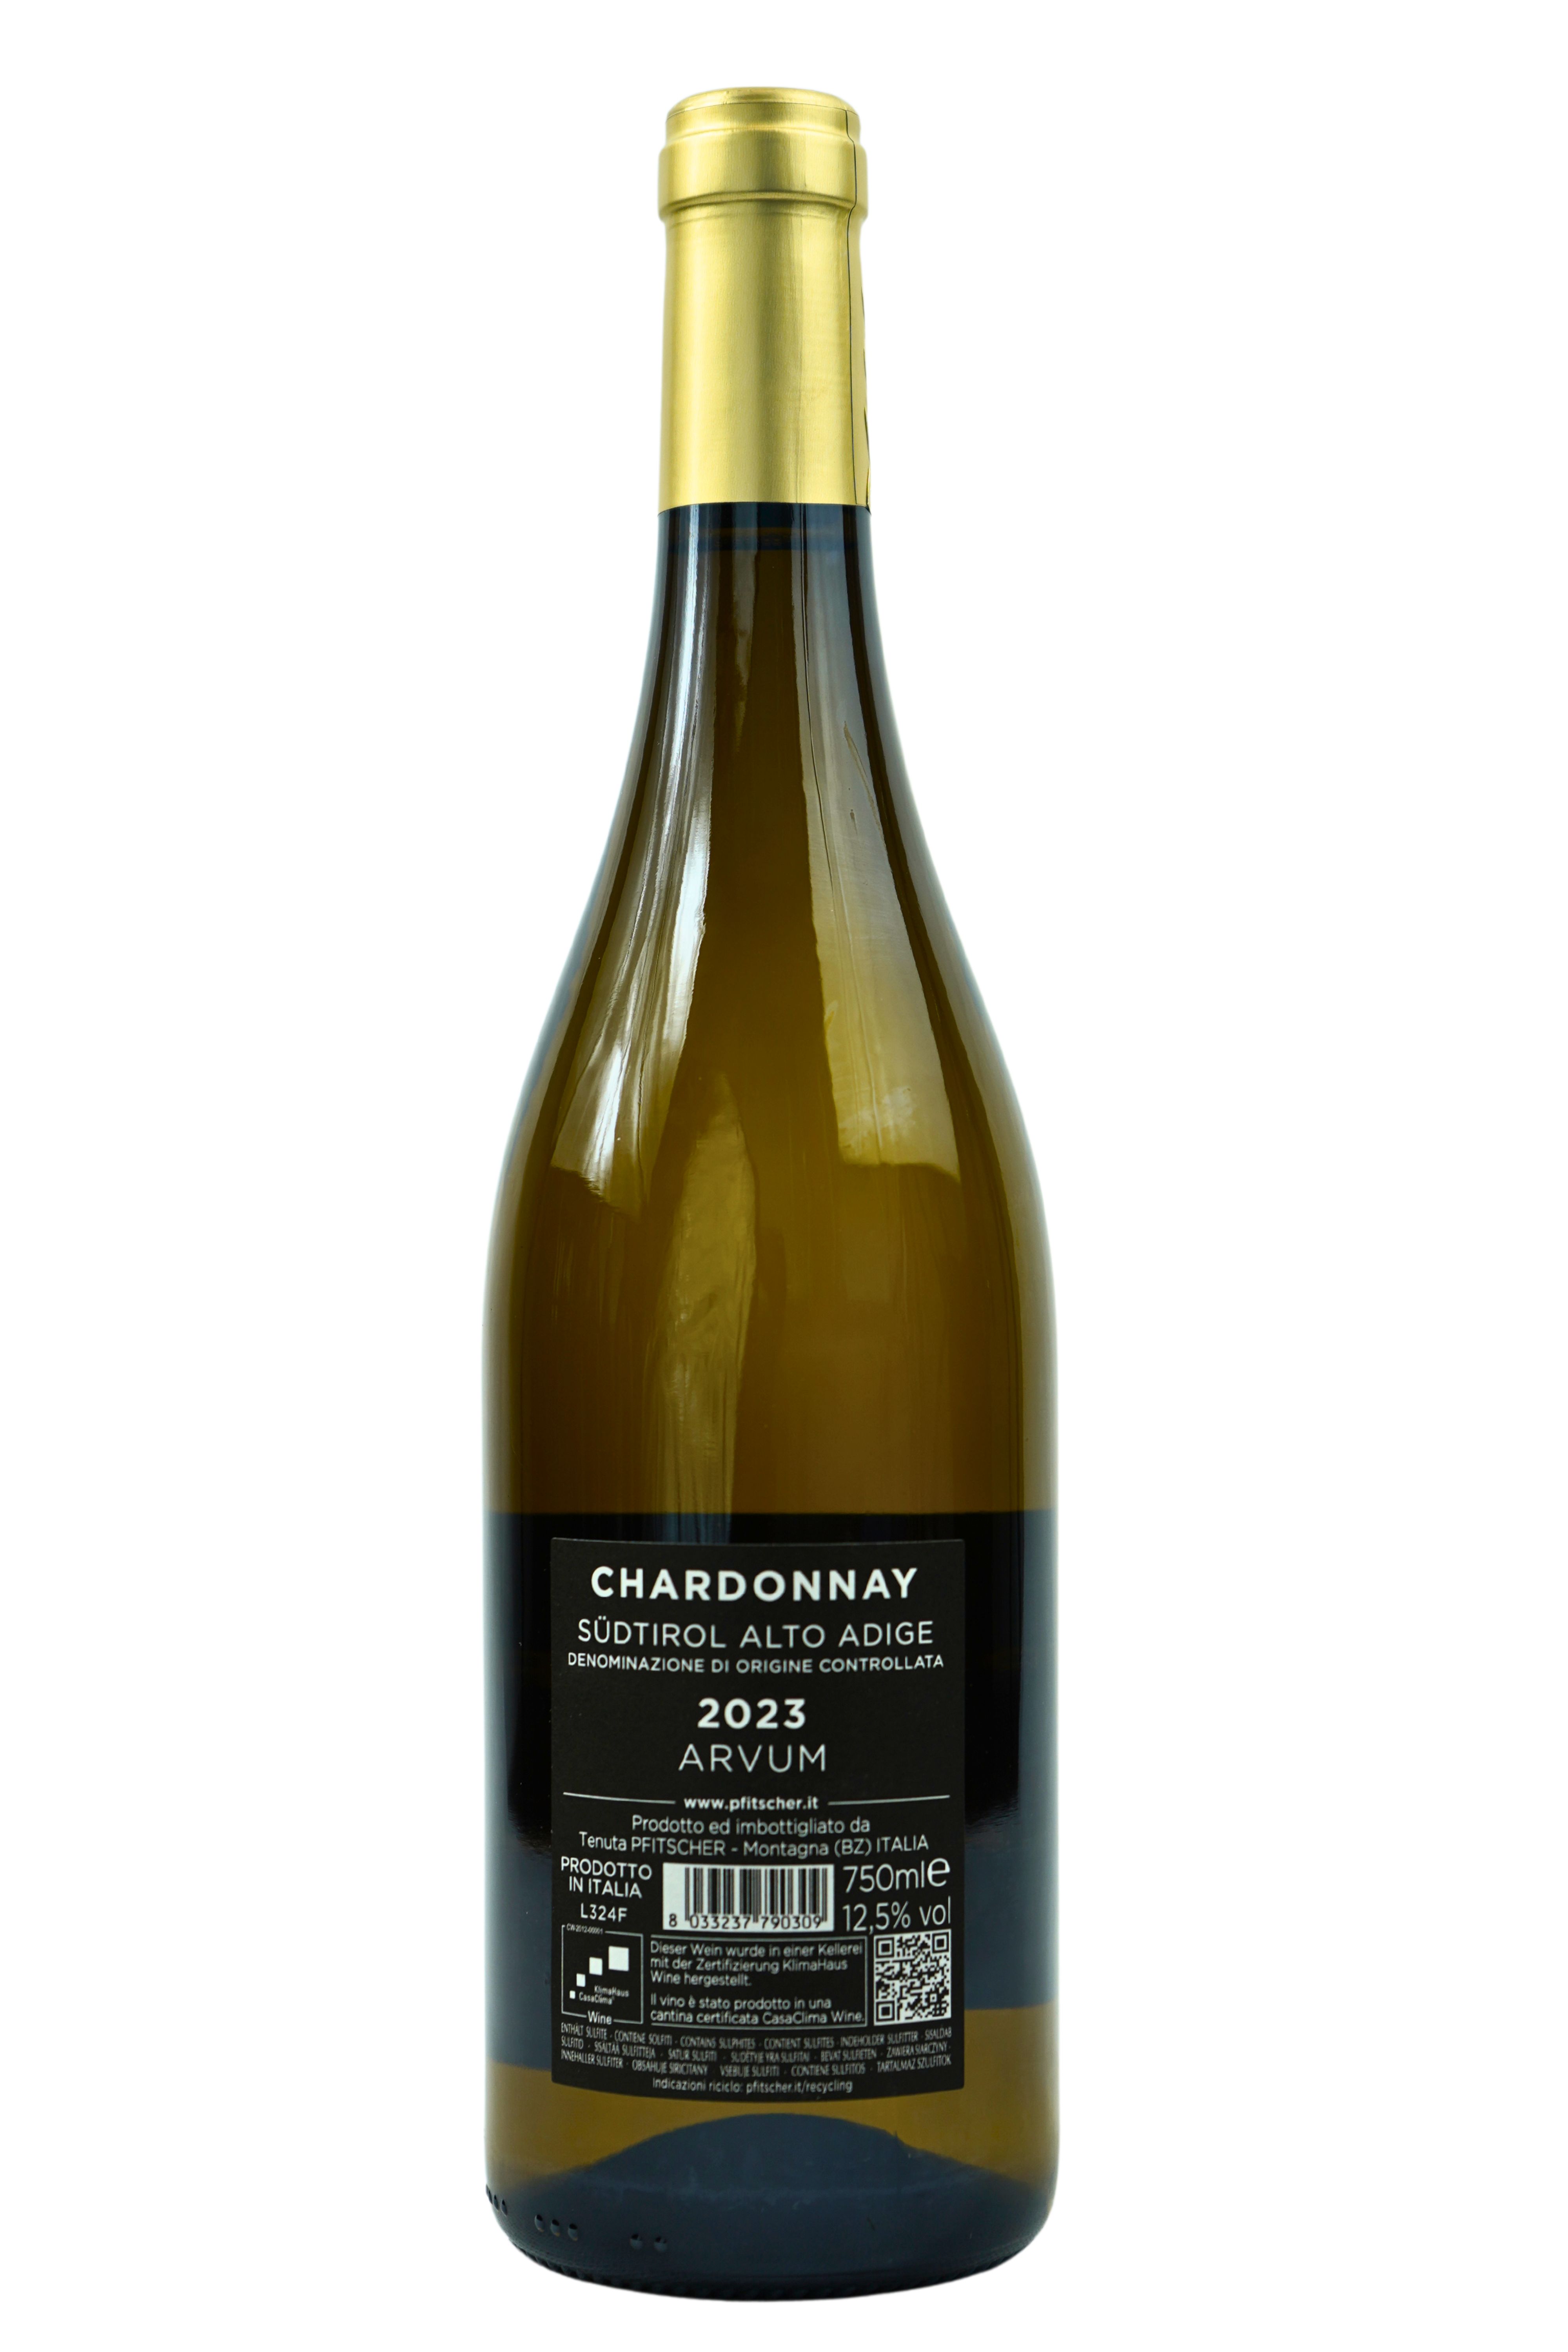 2023 Chardonnay ARVUM Südtirol